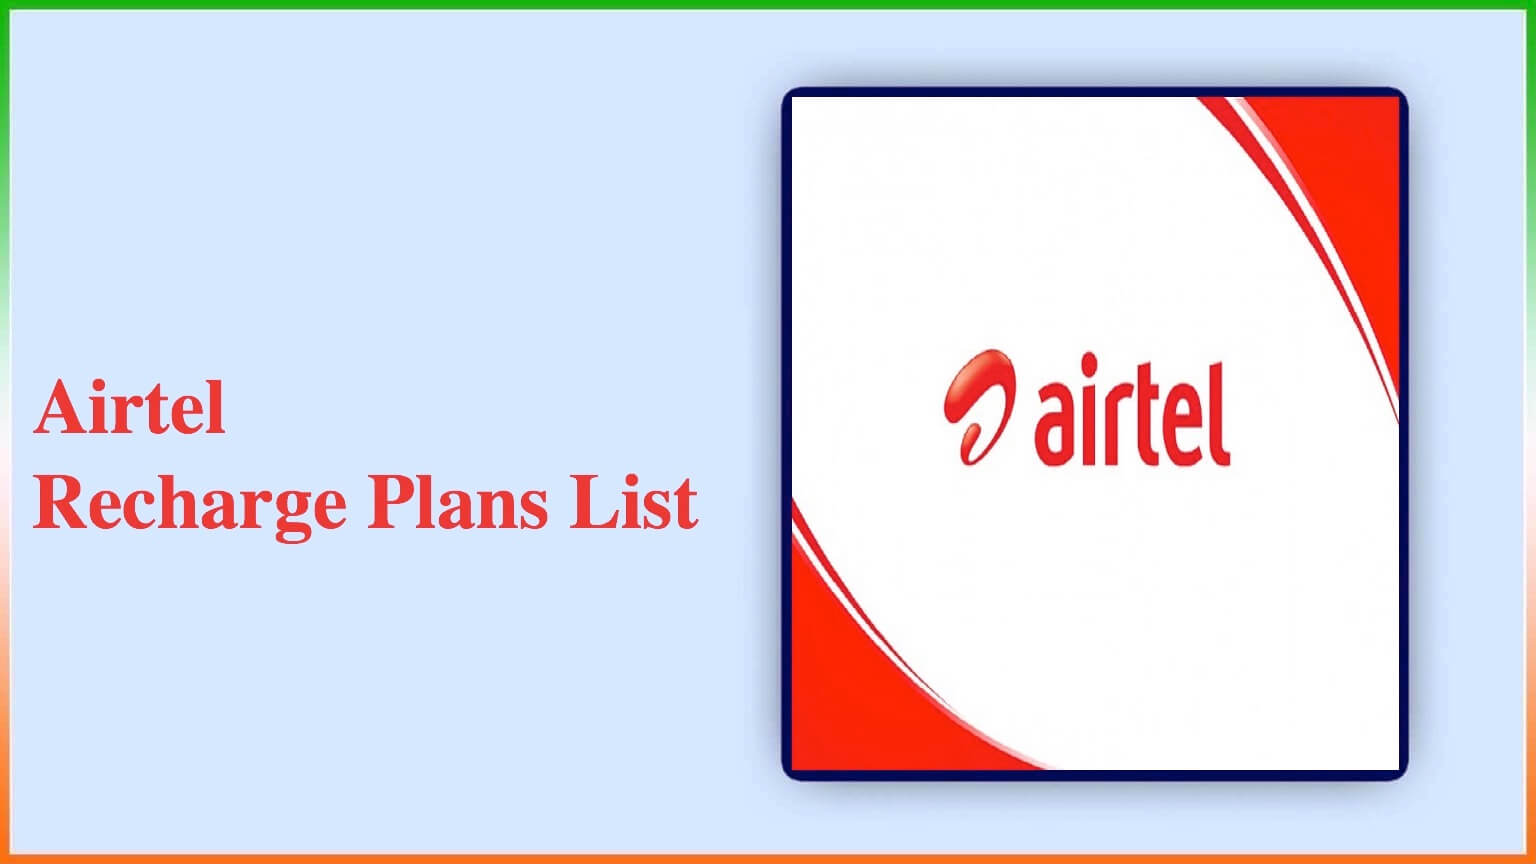 Airtel Recharge Plans List